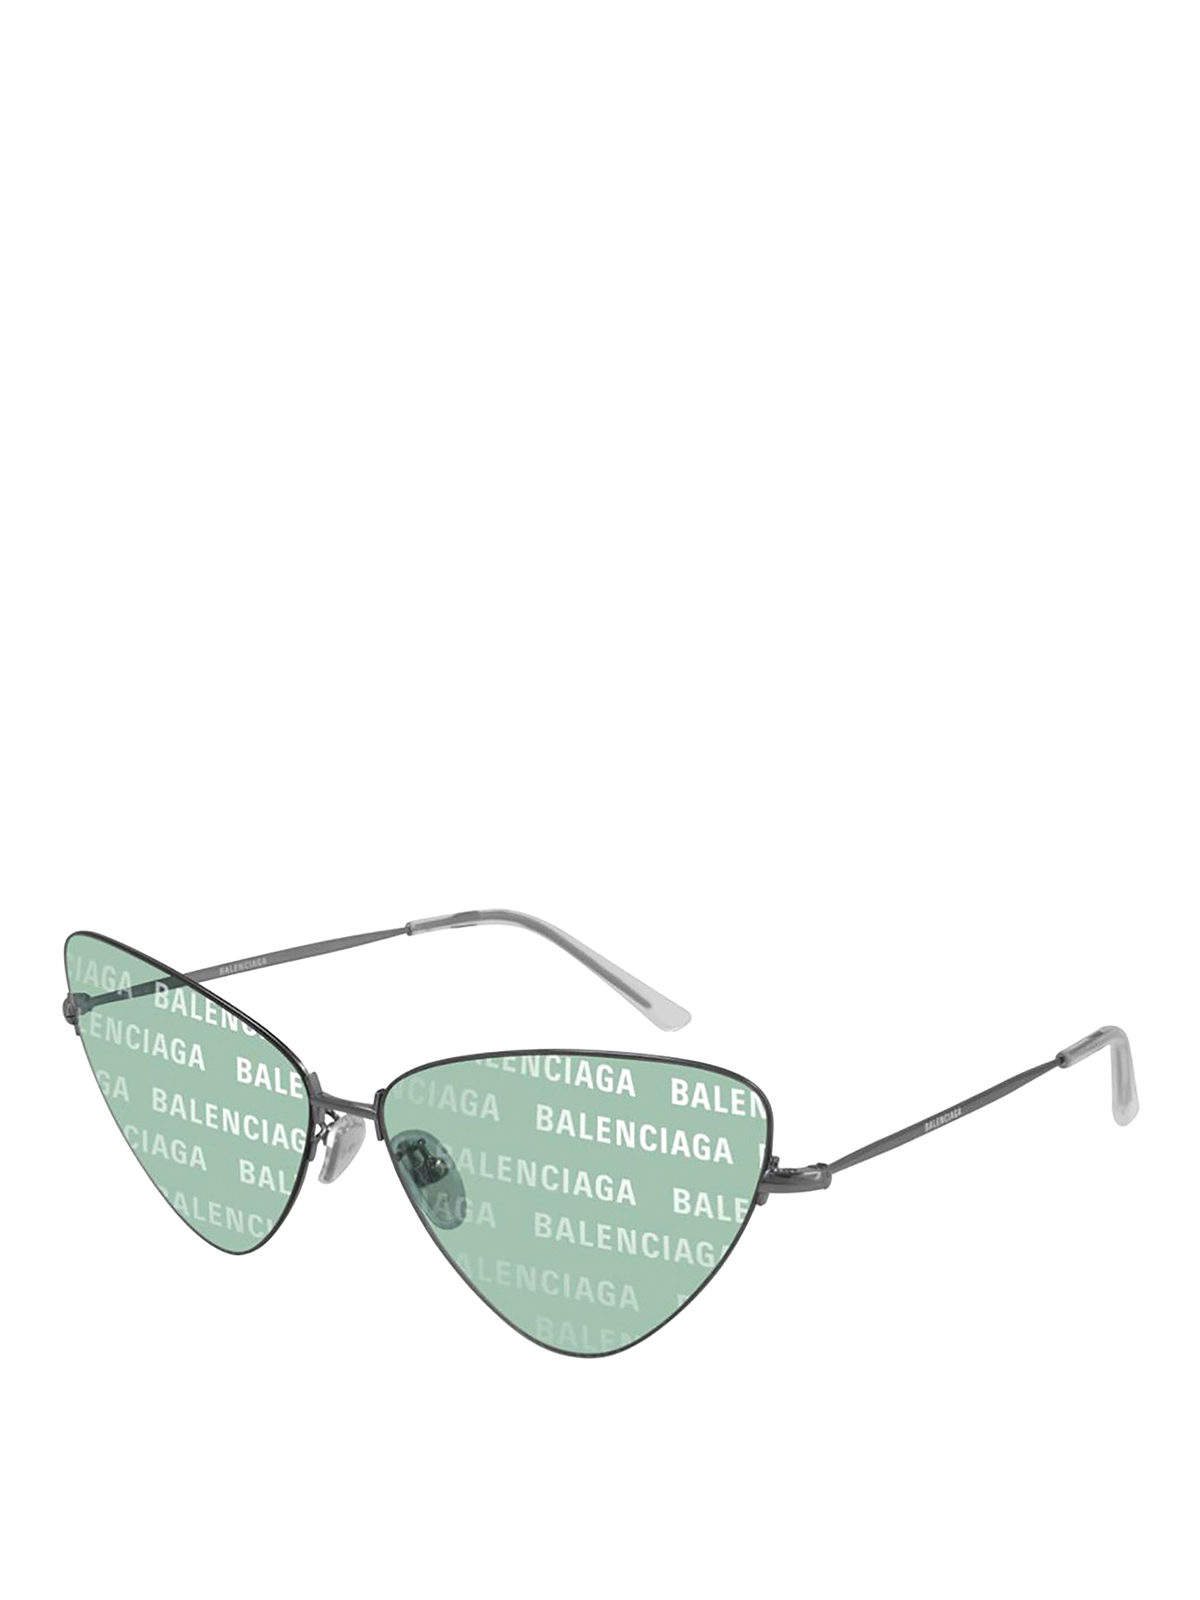 Balenciaga Invisile Xxl Sunglasses In Green